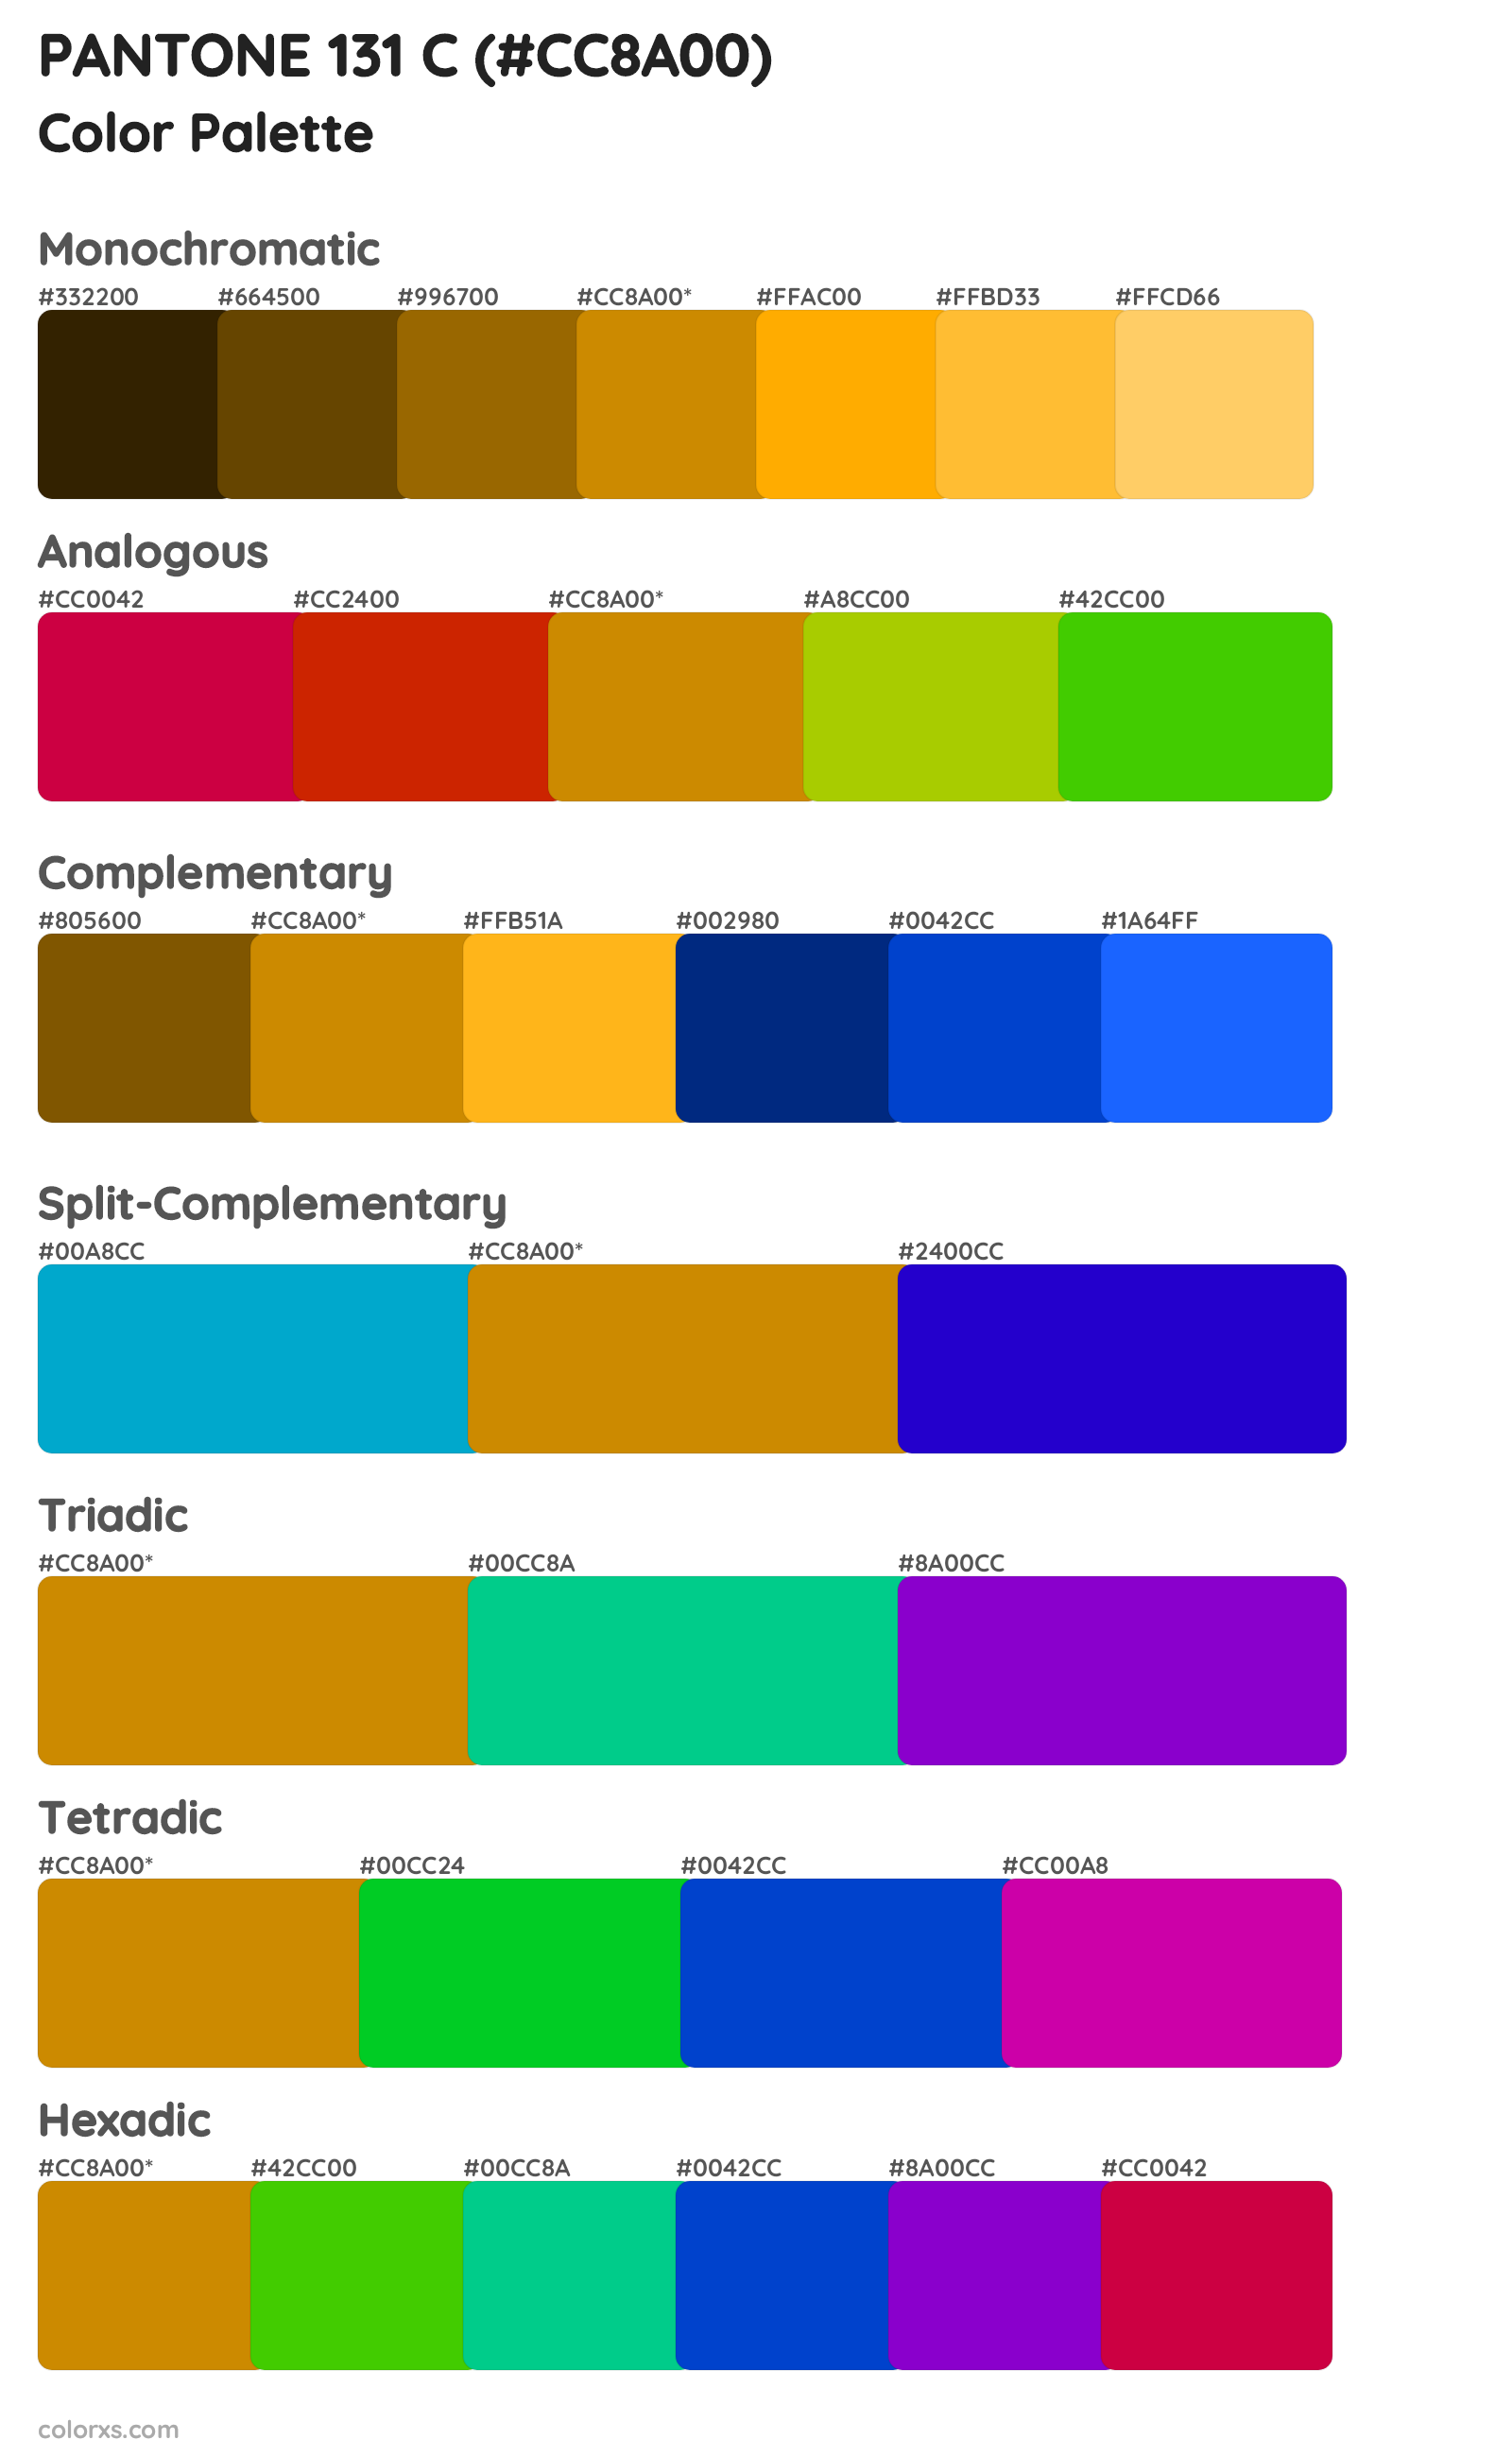 PANTONE 131 C Color Scheme Palettes